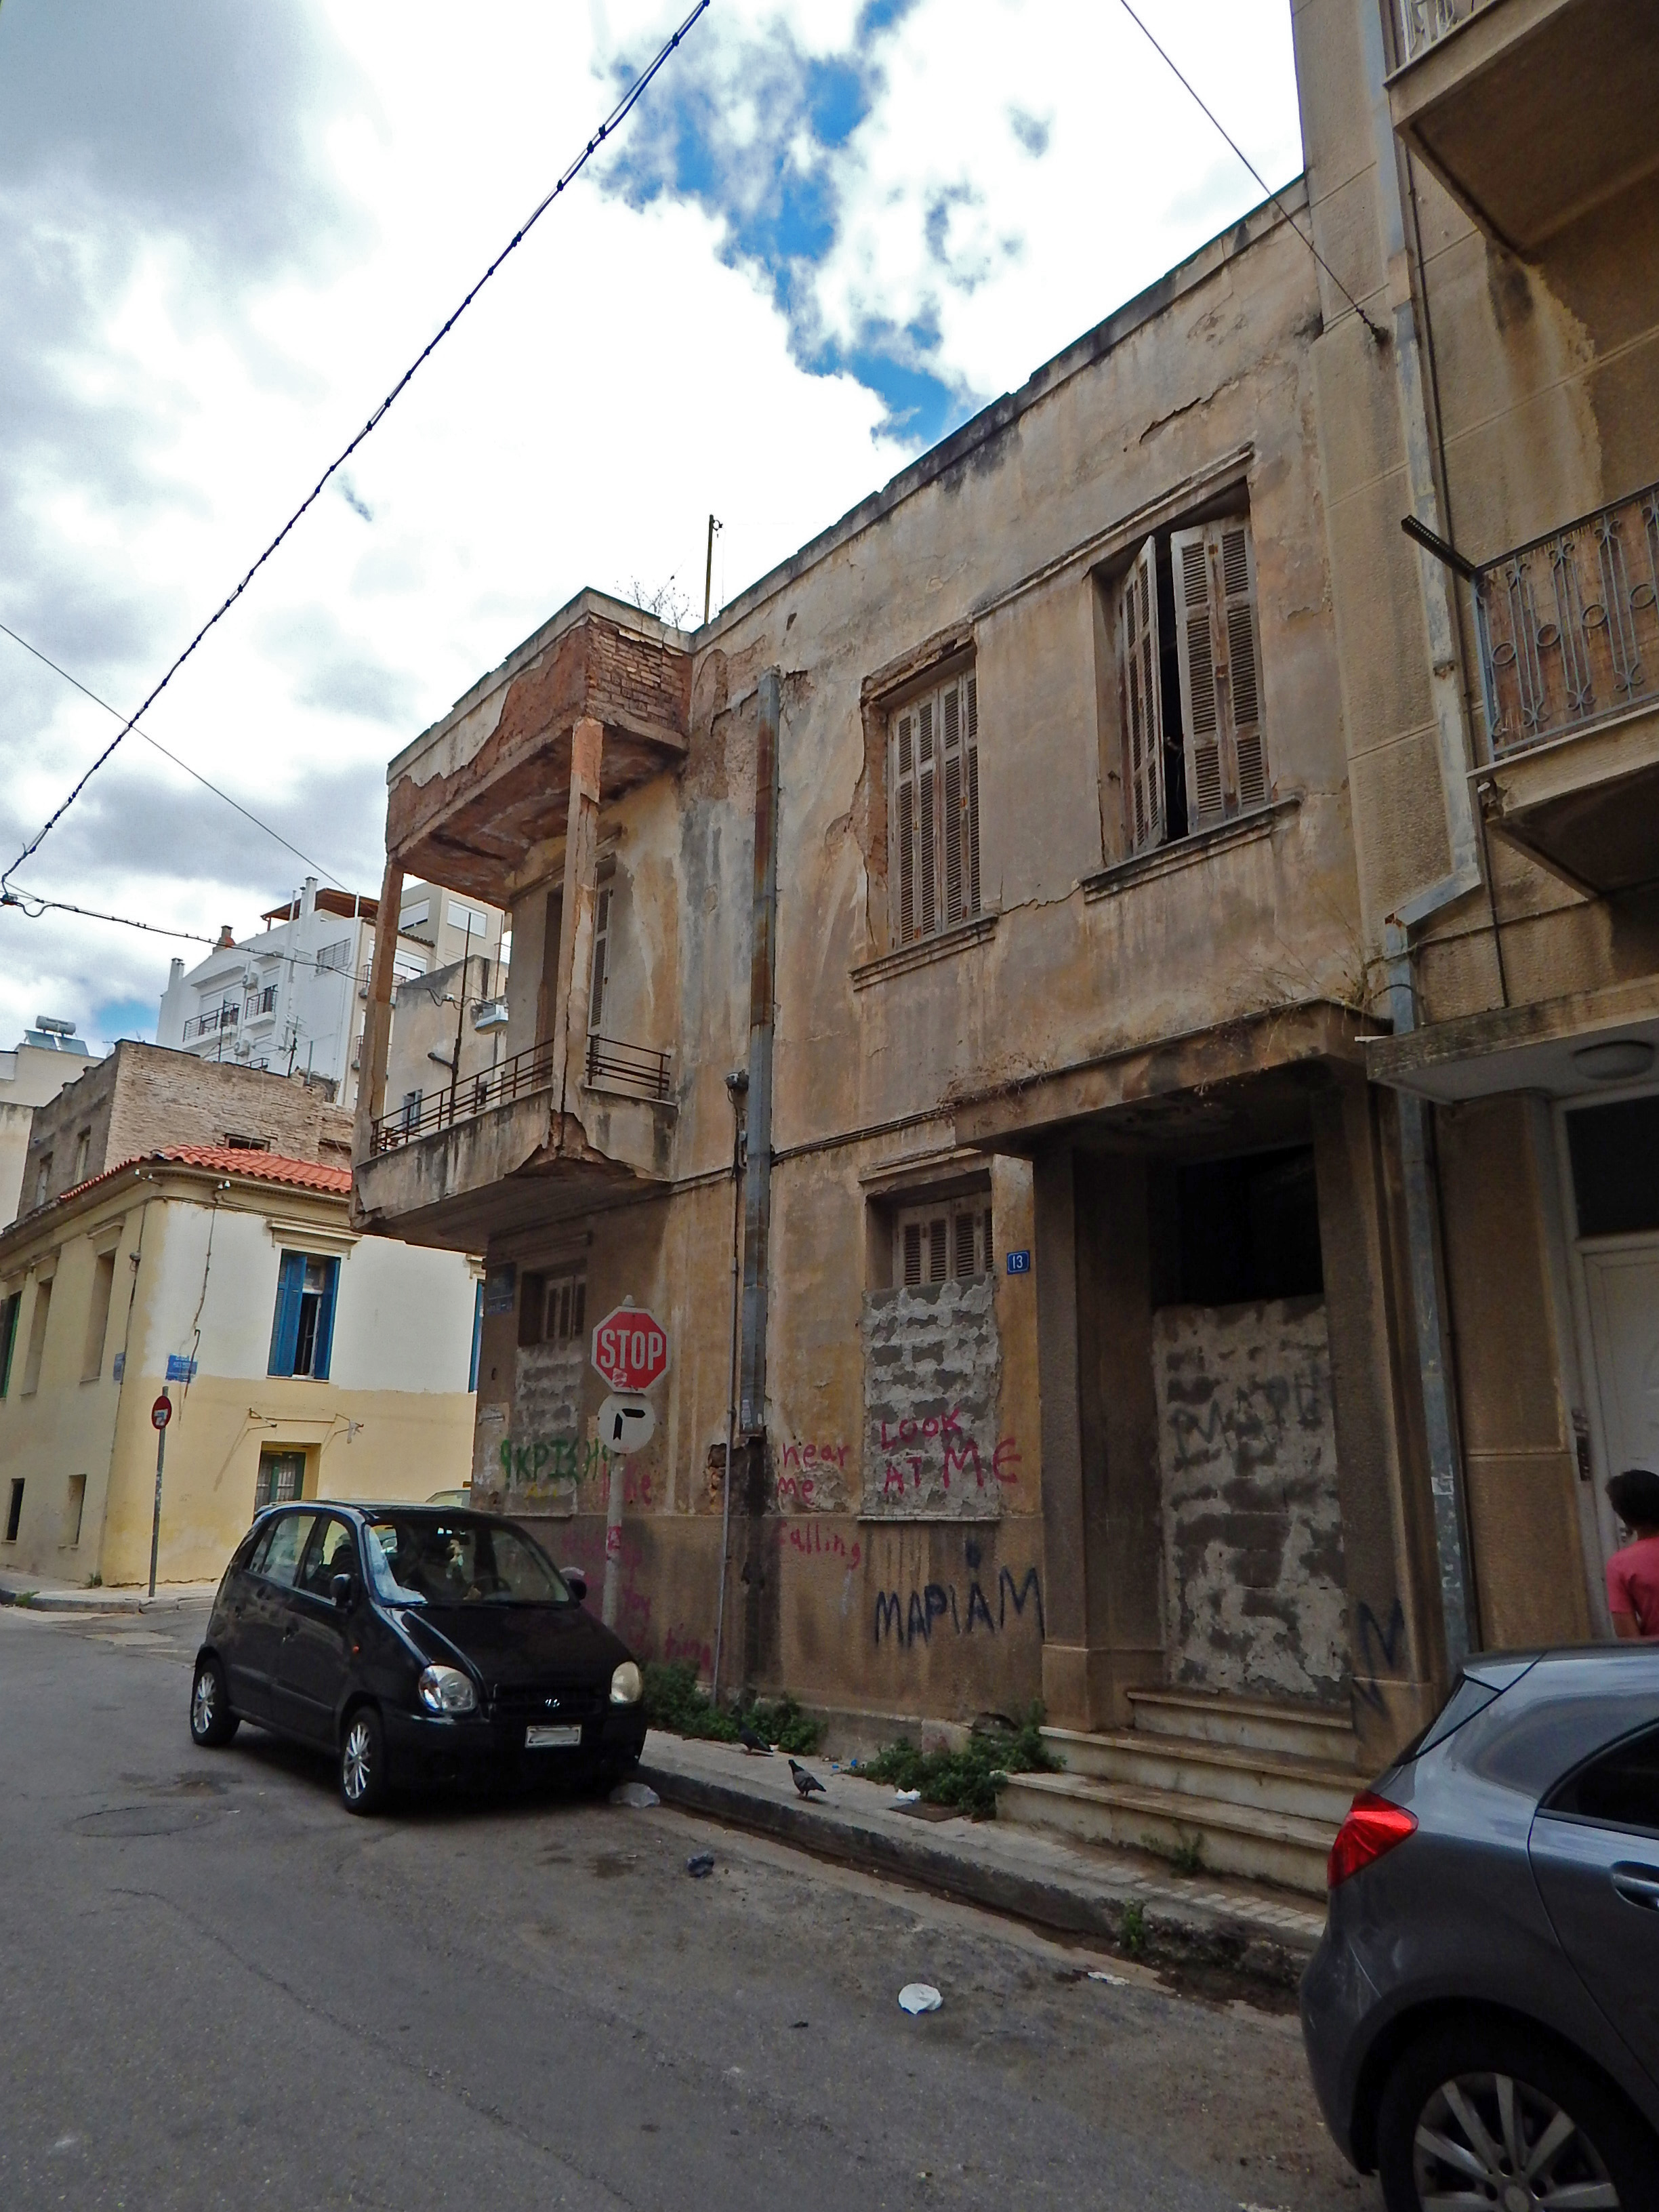 General façade view on Eretrias Street (2015)